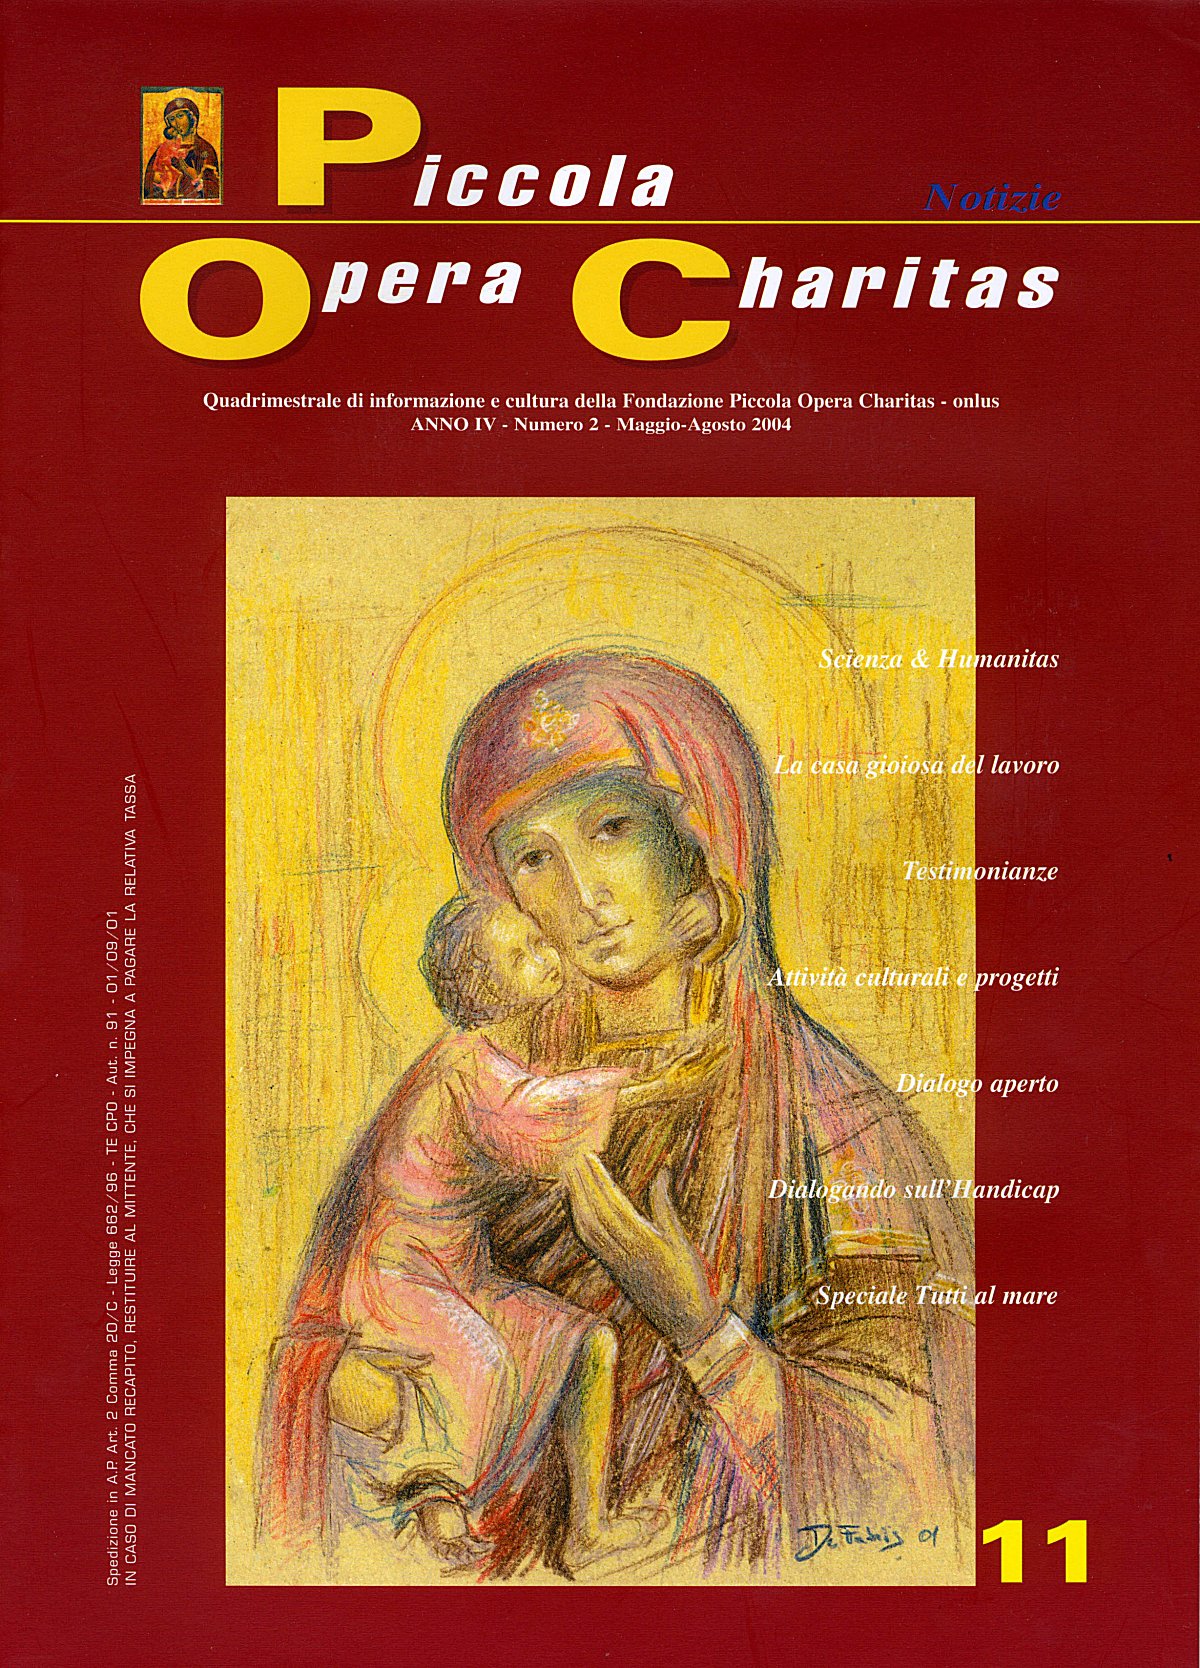 "Piccola Opera Charitas", anno  IV, n. 2, maggio-agosto 2004